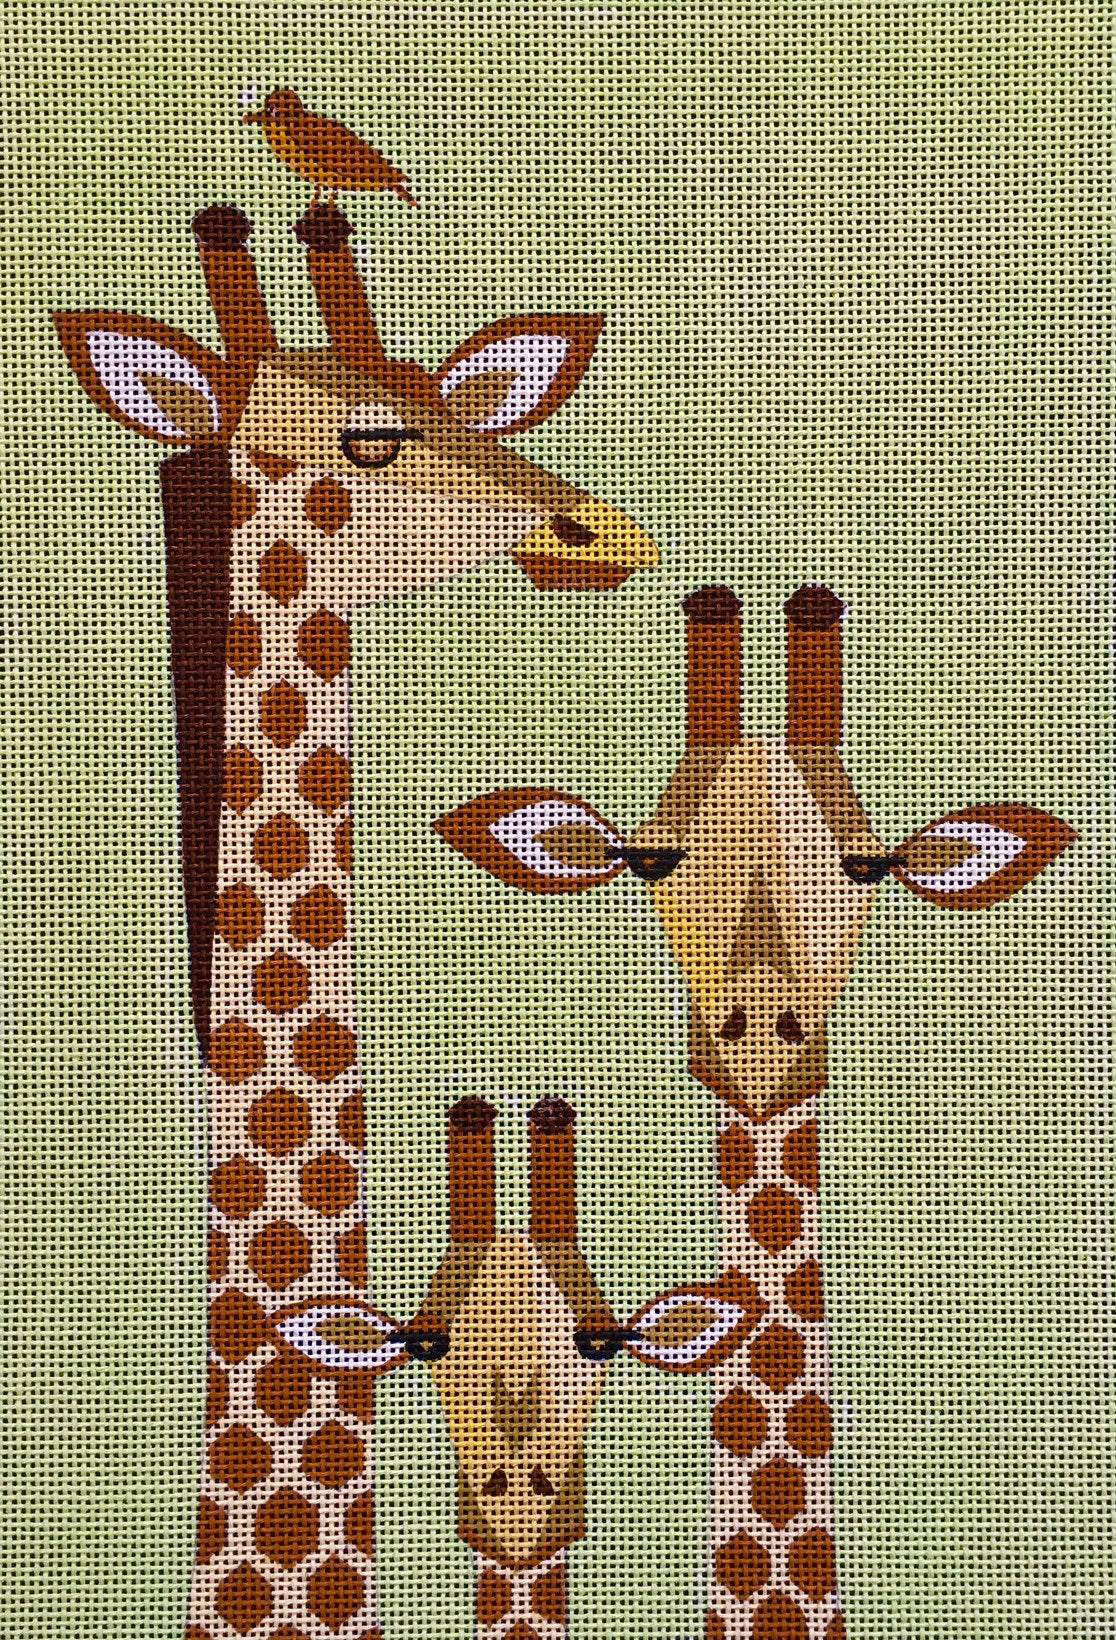 SP-011 Giraffe Family